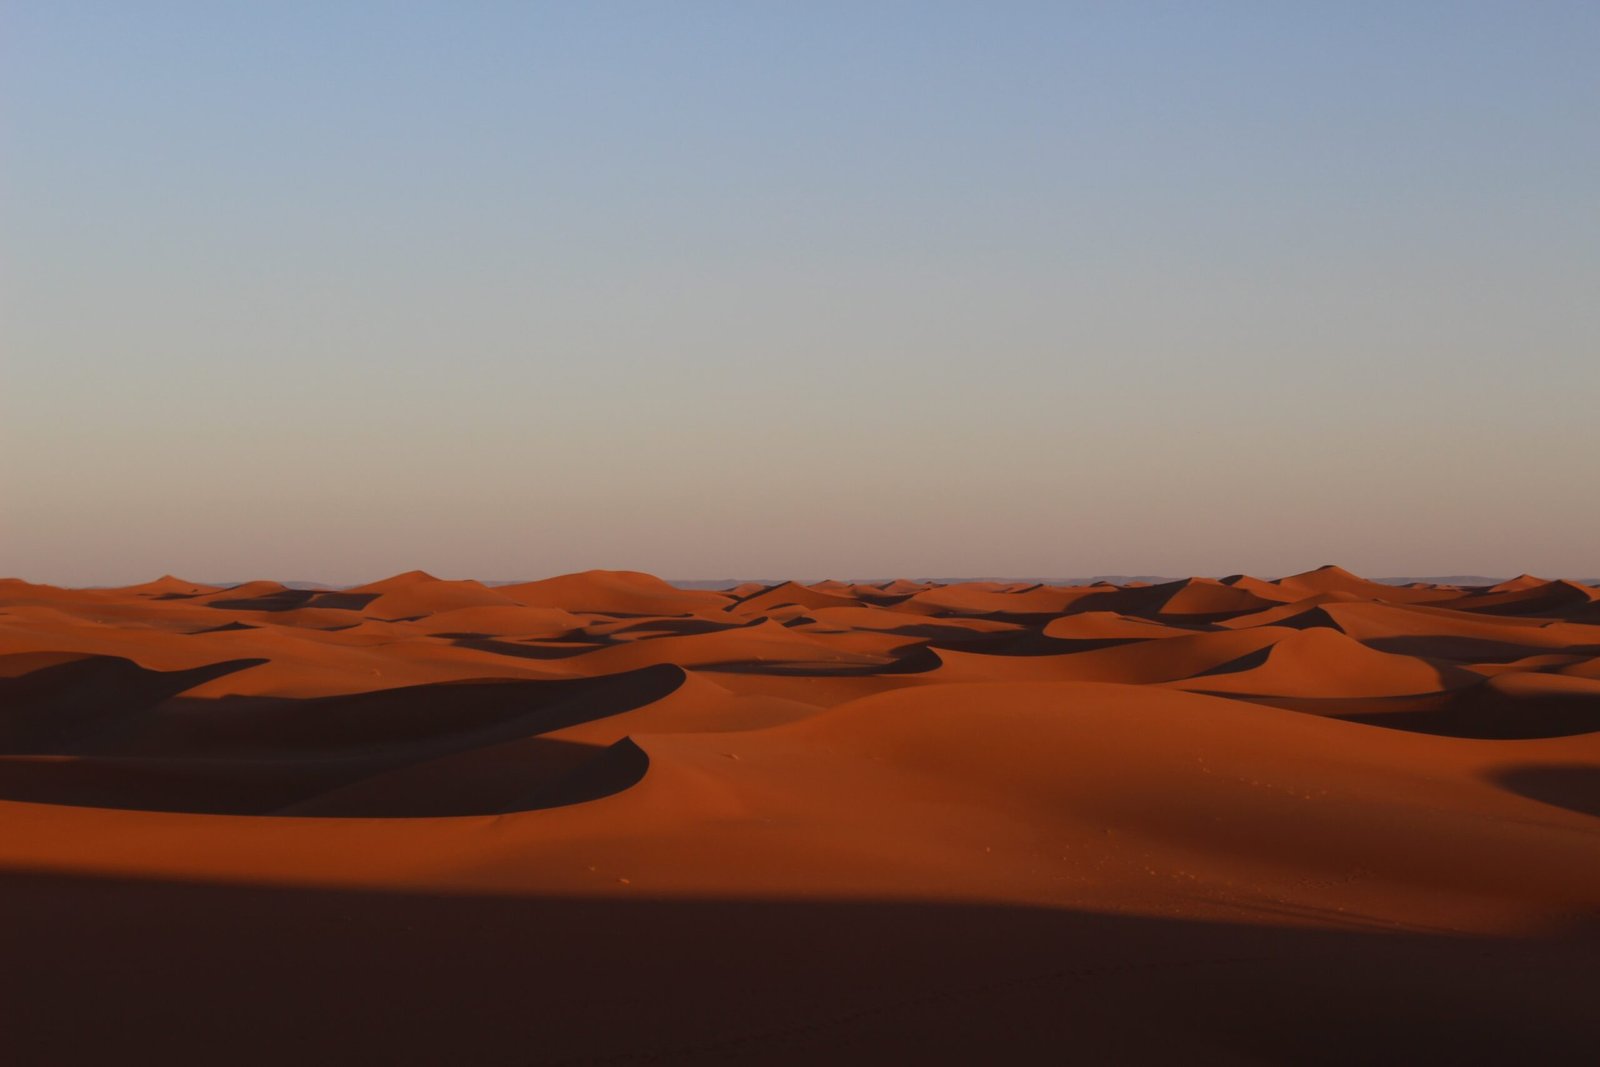 a vast expanse of sand dunes in the desert